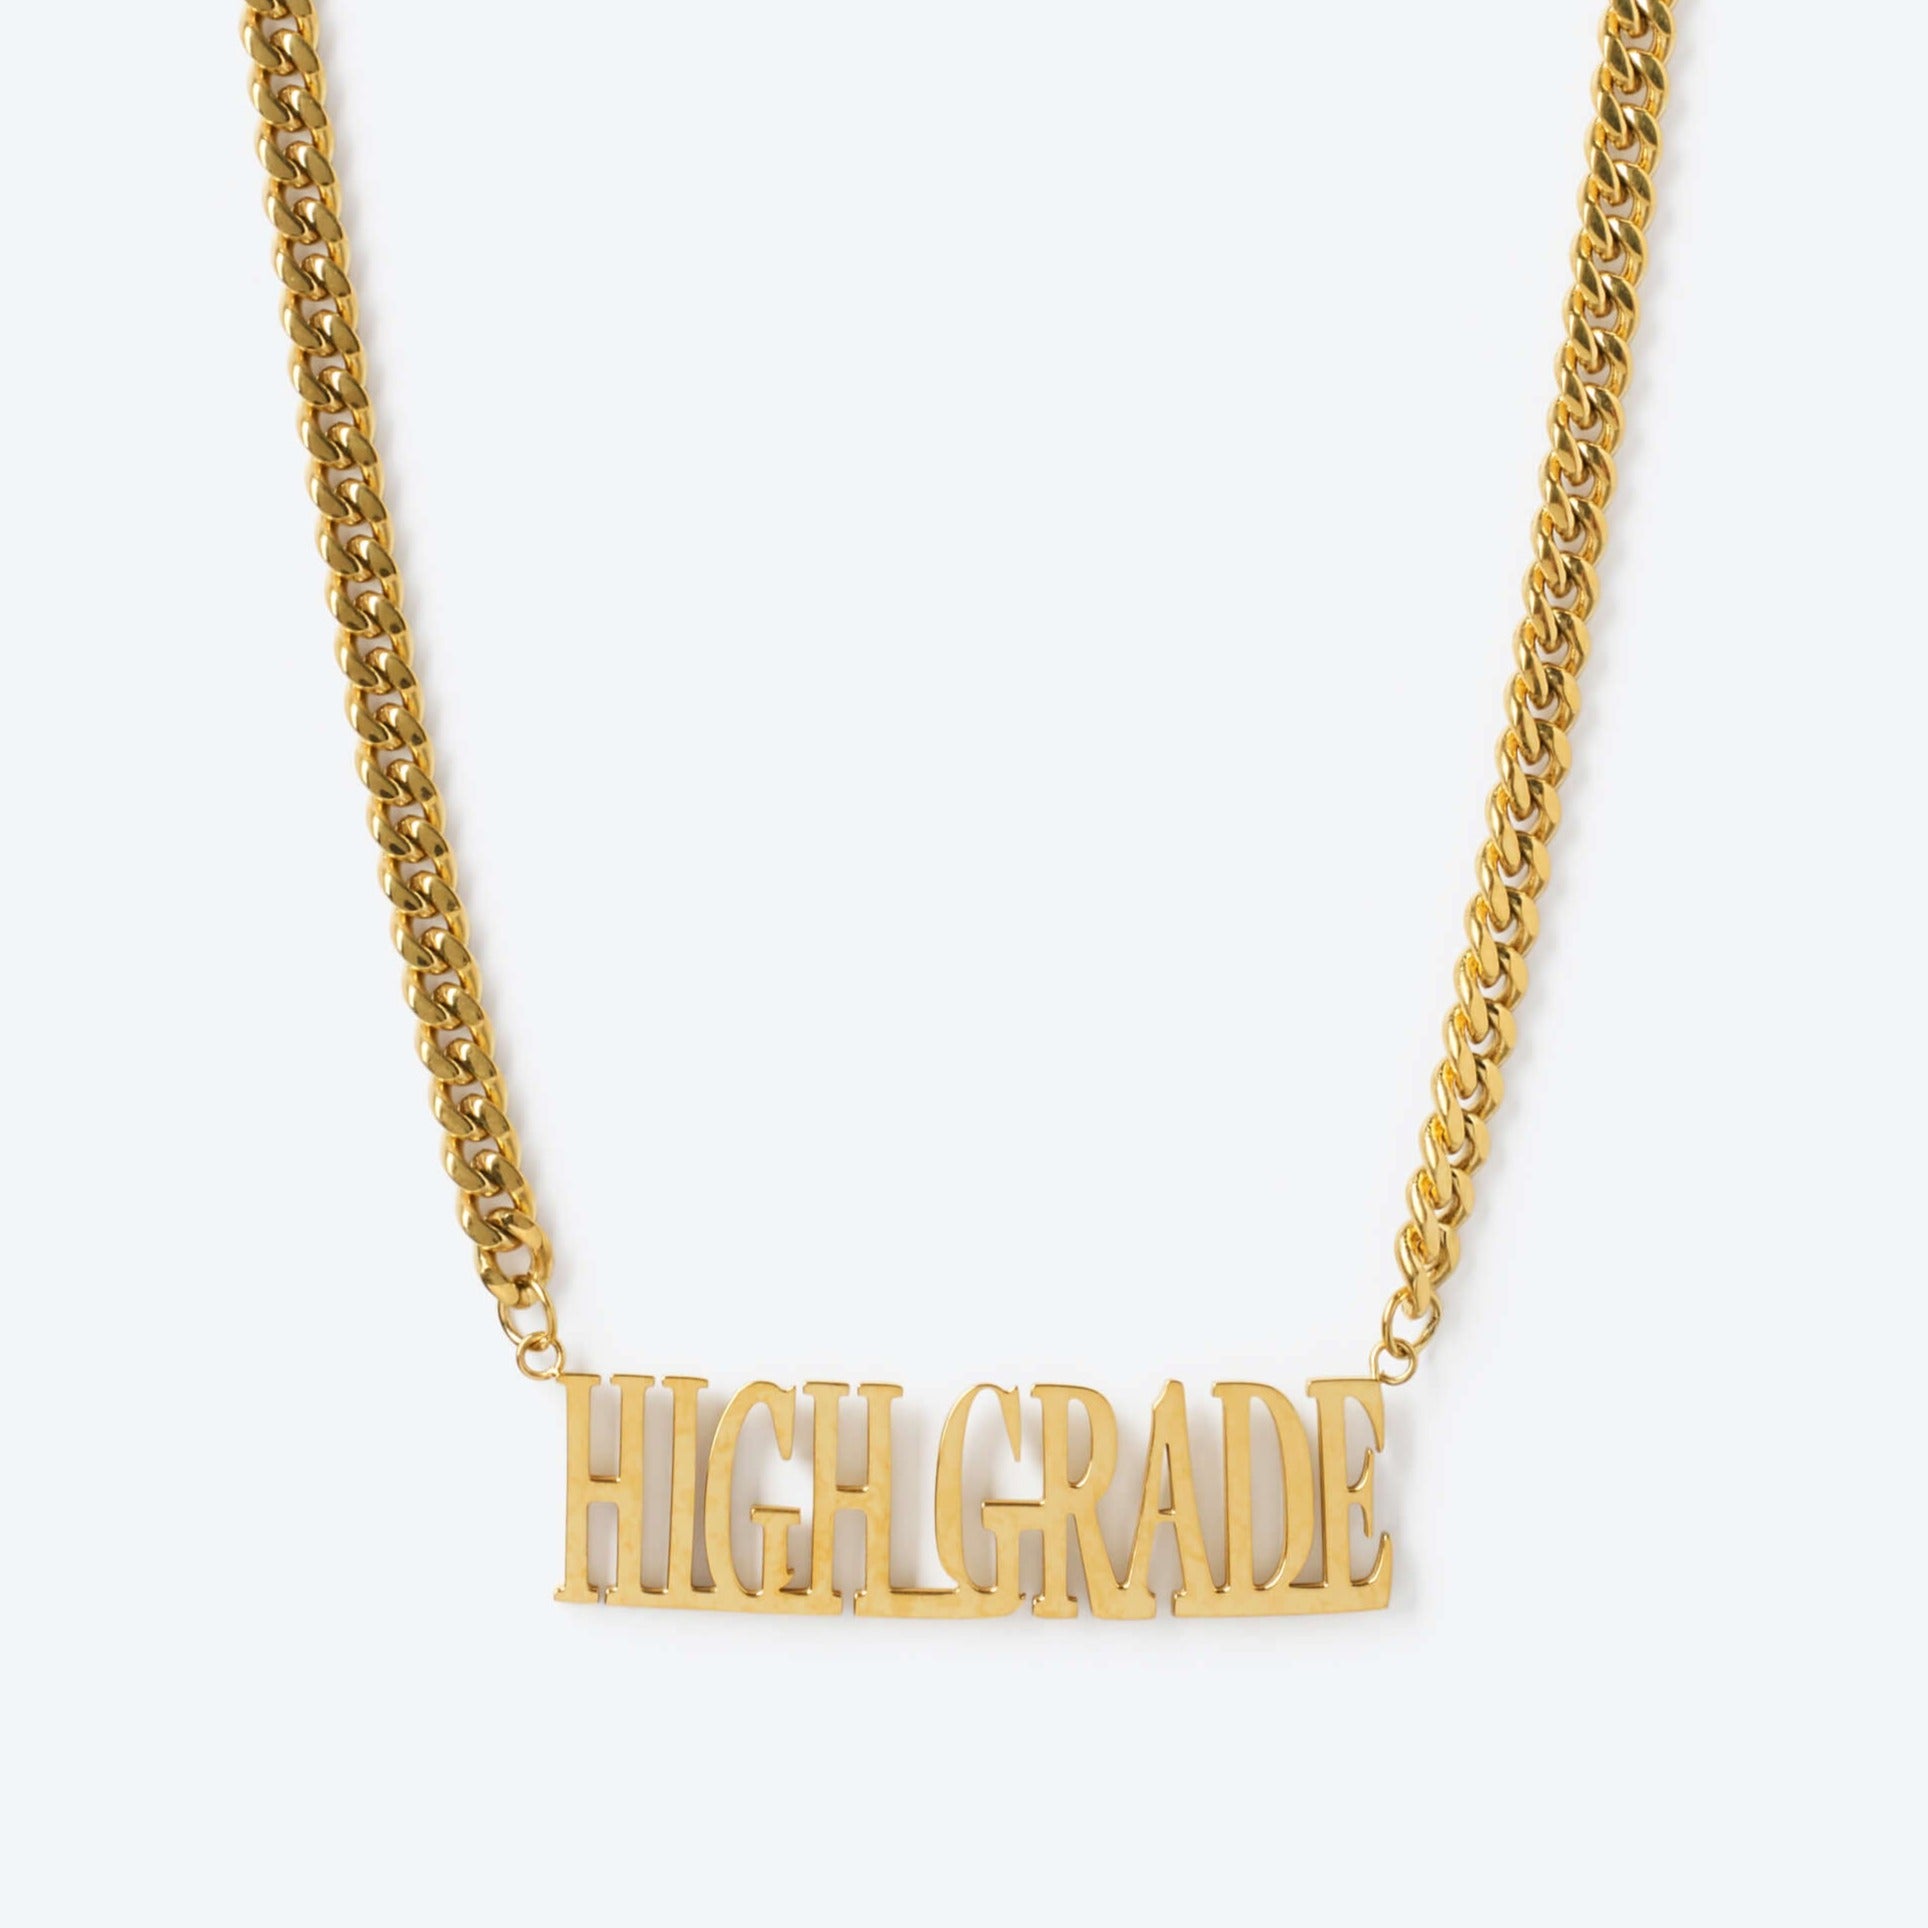 High Grade Chain